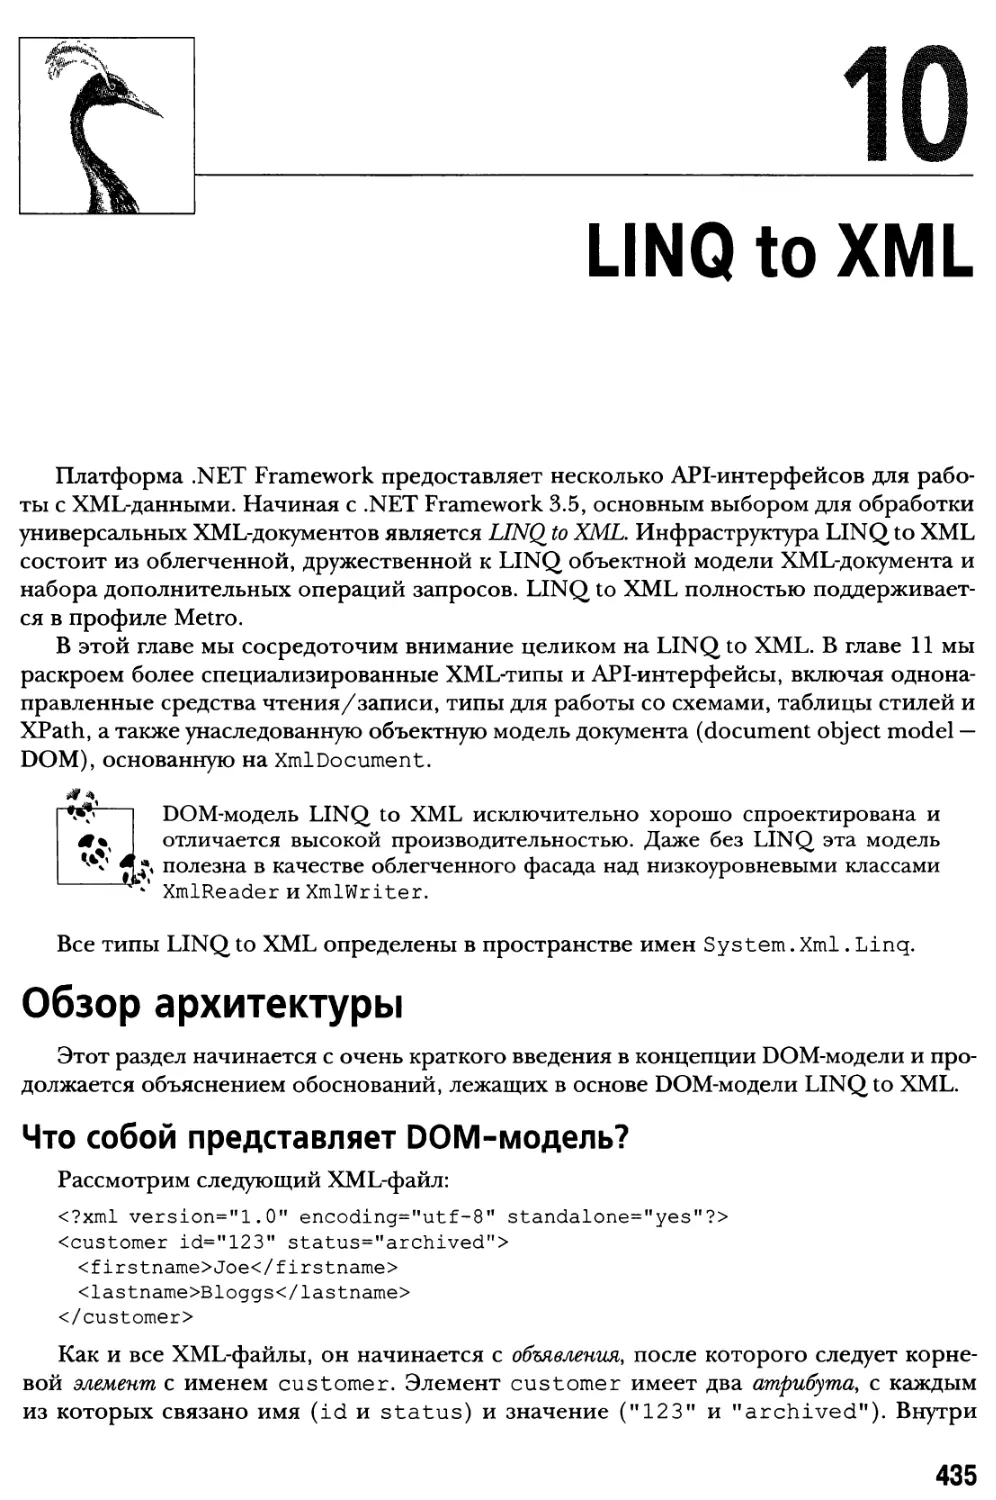 Глава 10. LINQ to XML